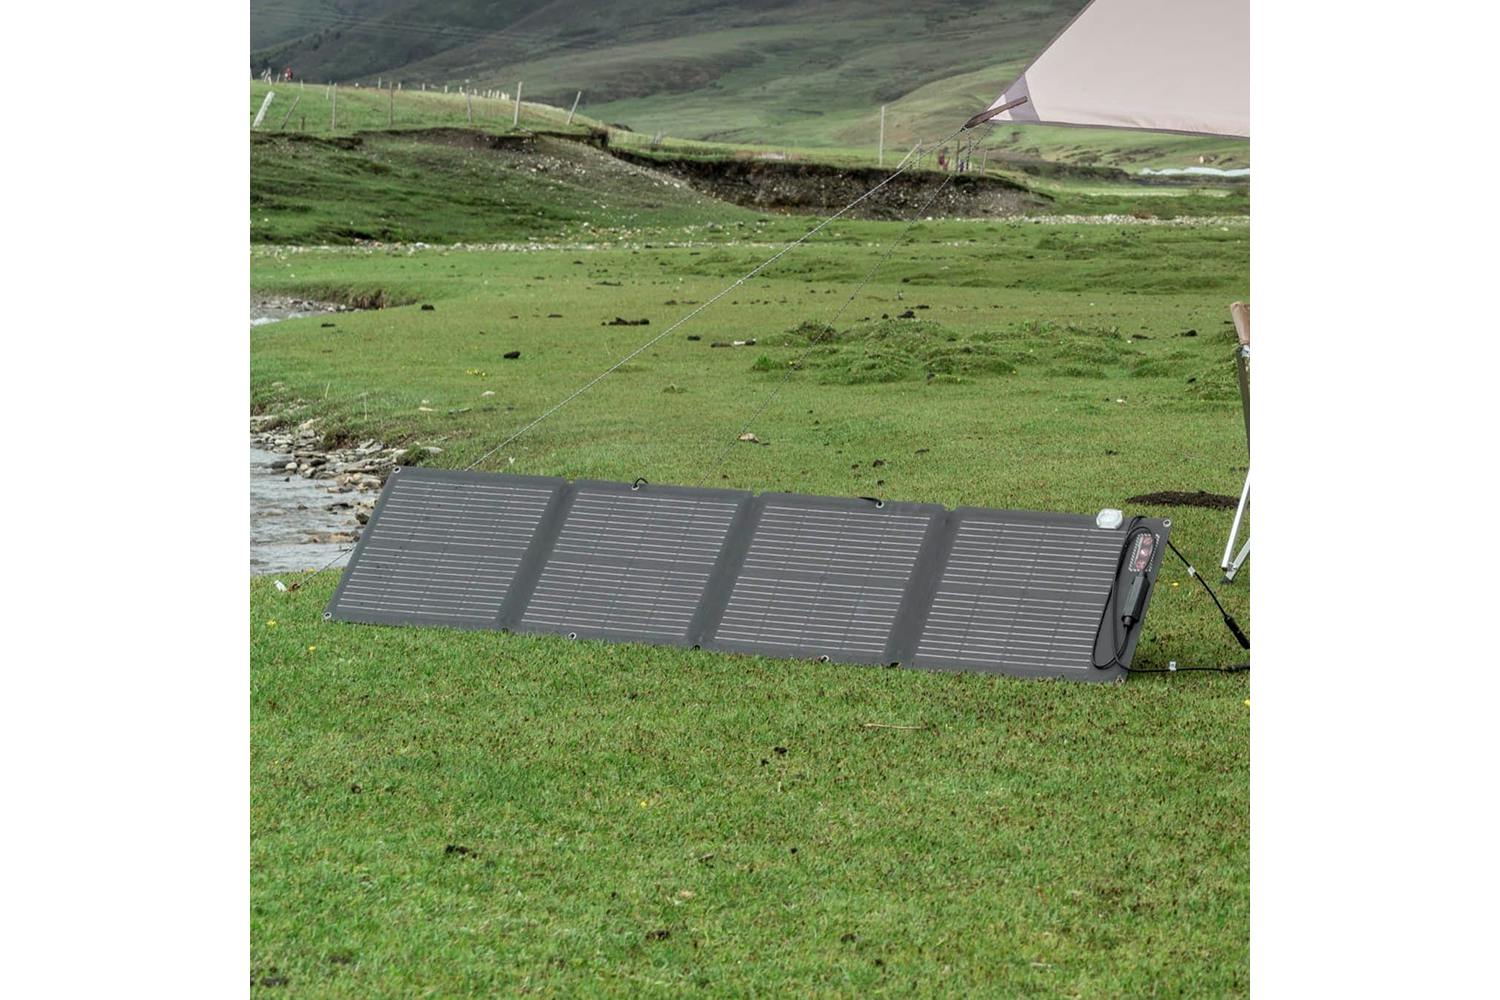 Ecoflow 110W Solar Panel